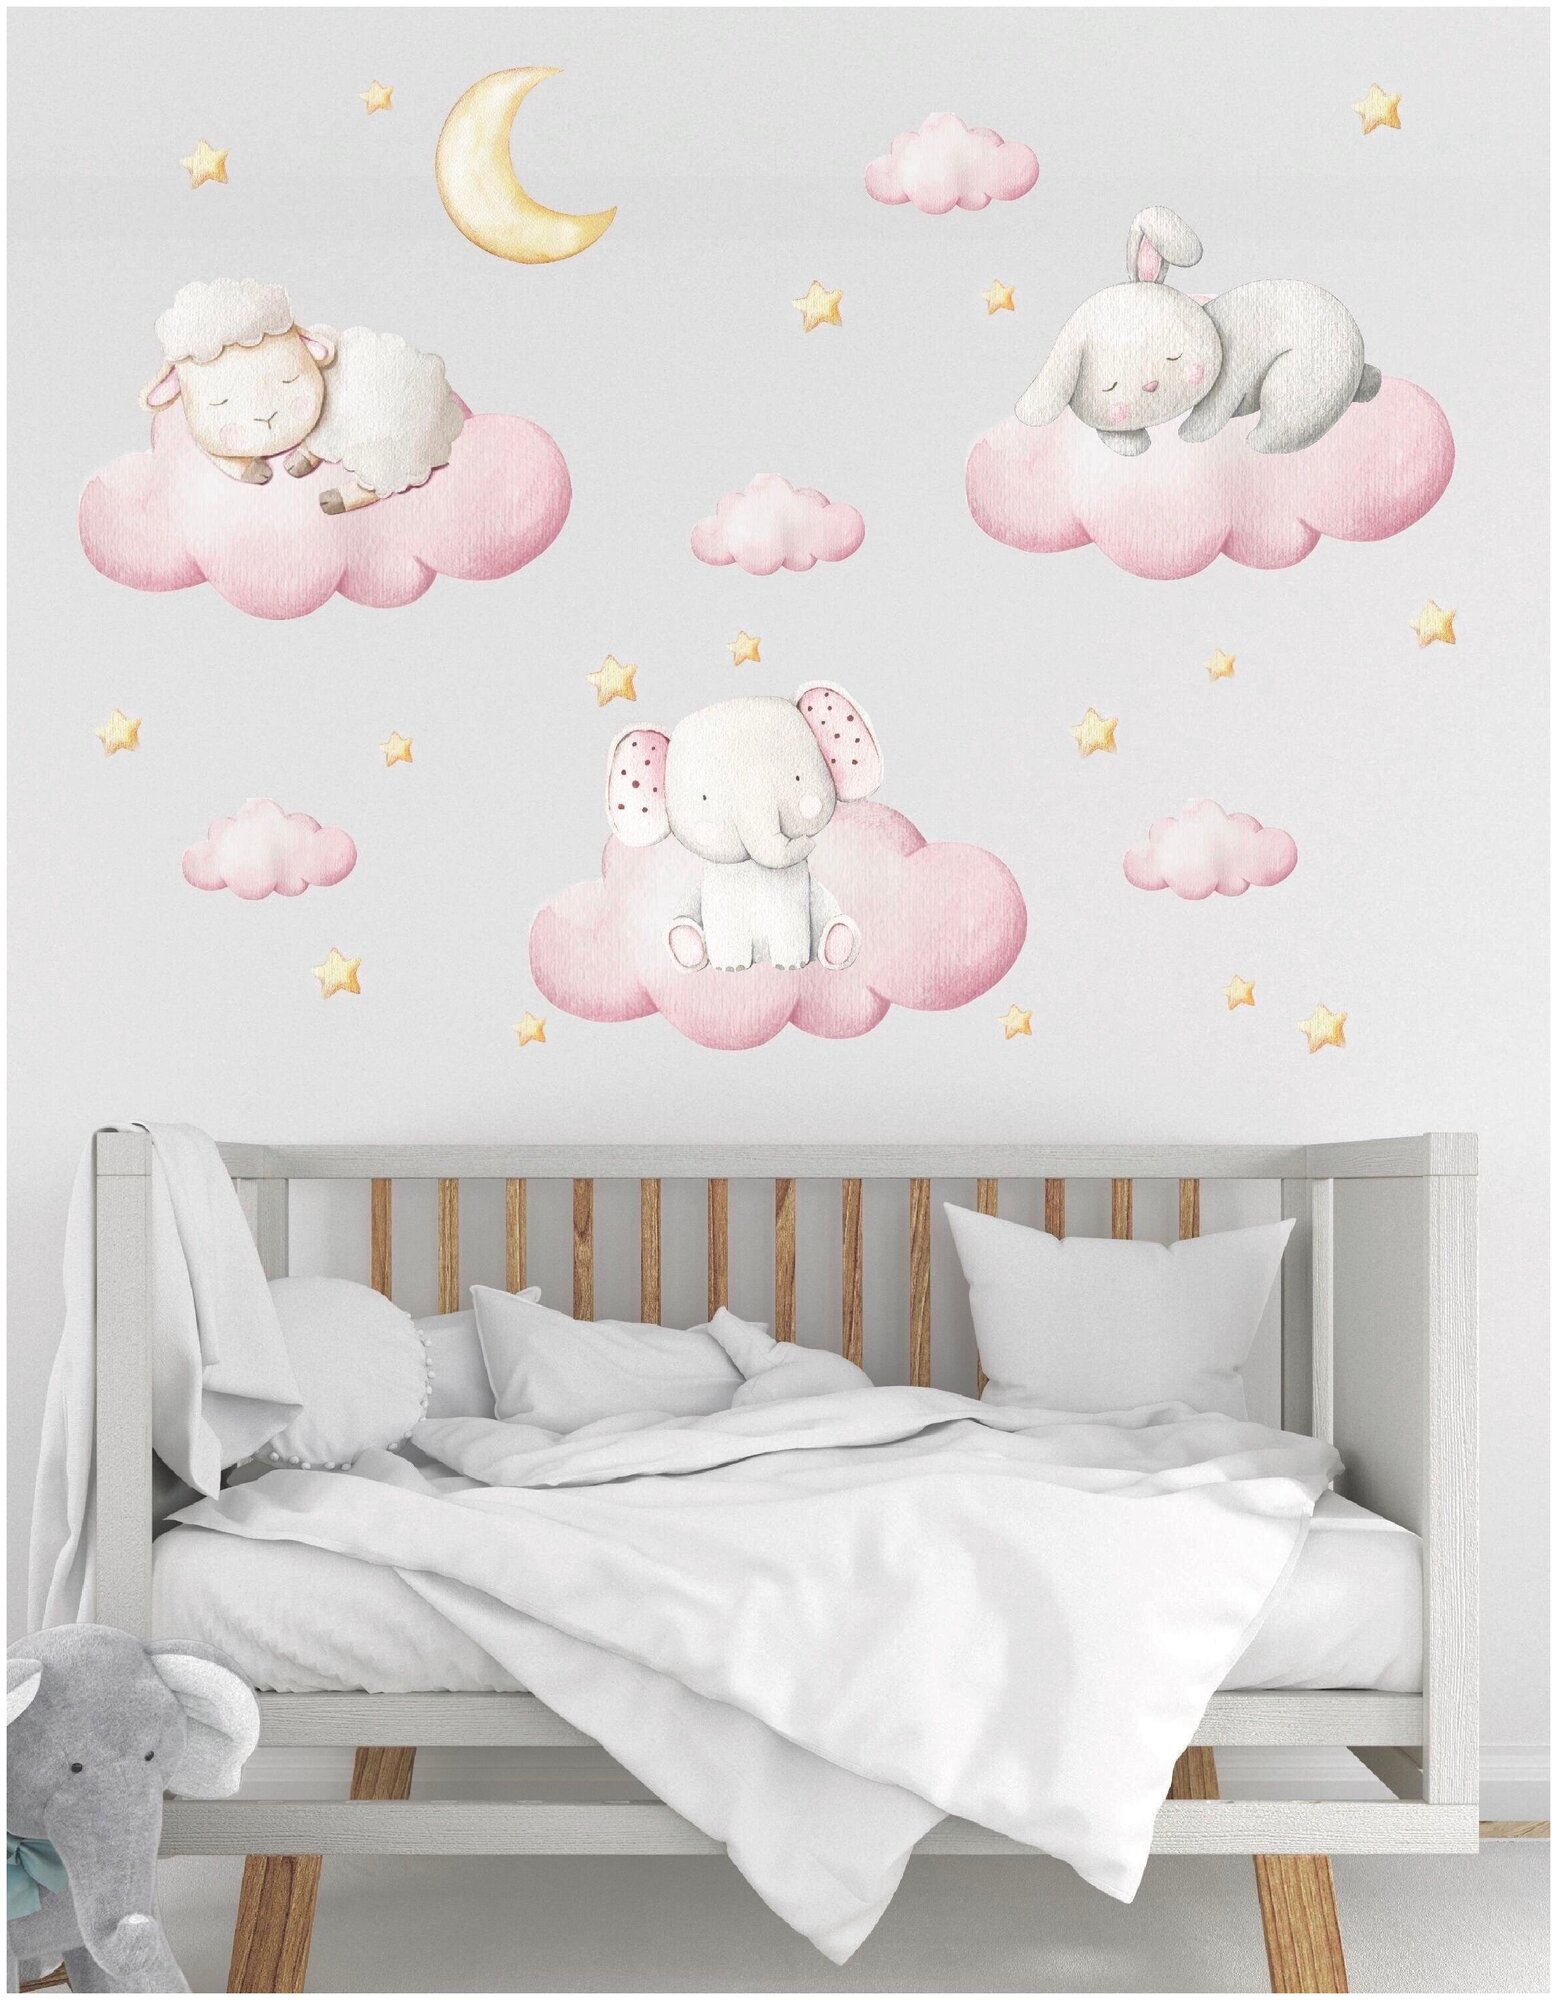 Интерьерные декоративные виниловые наклейки на стену, обои детские большие "Животные на облаках" декор в детскую комнату, размер композиции 120/140 см